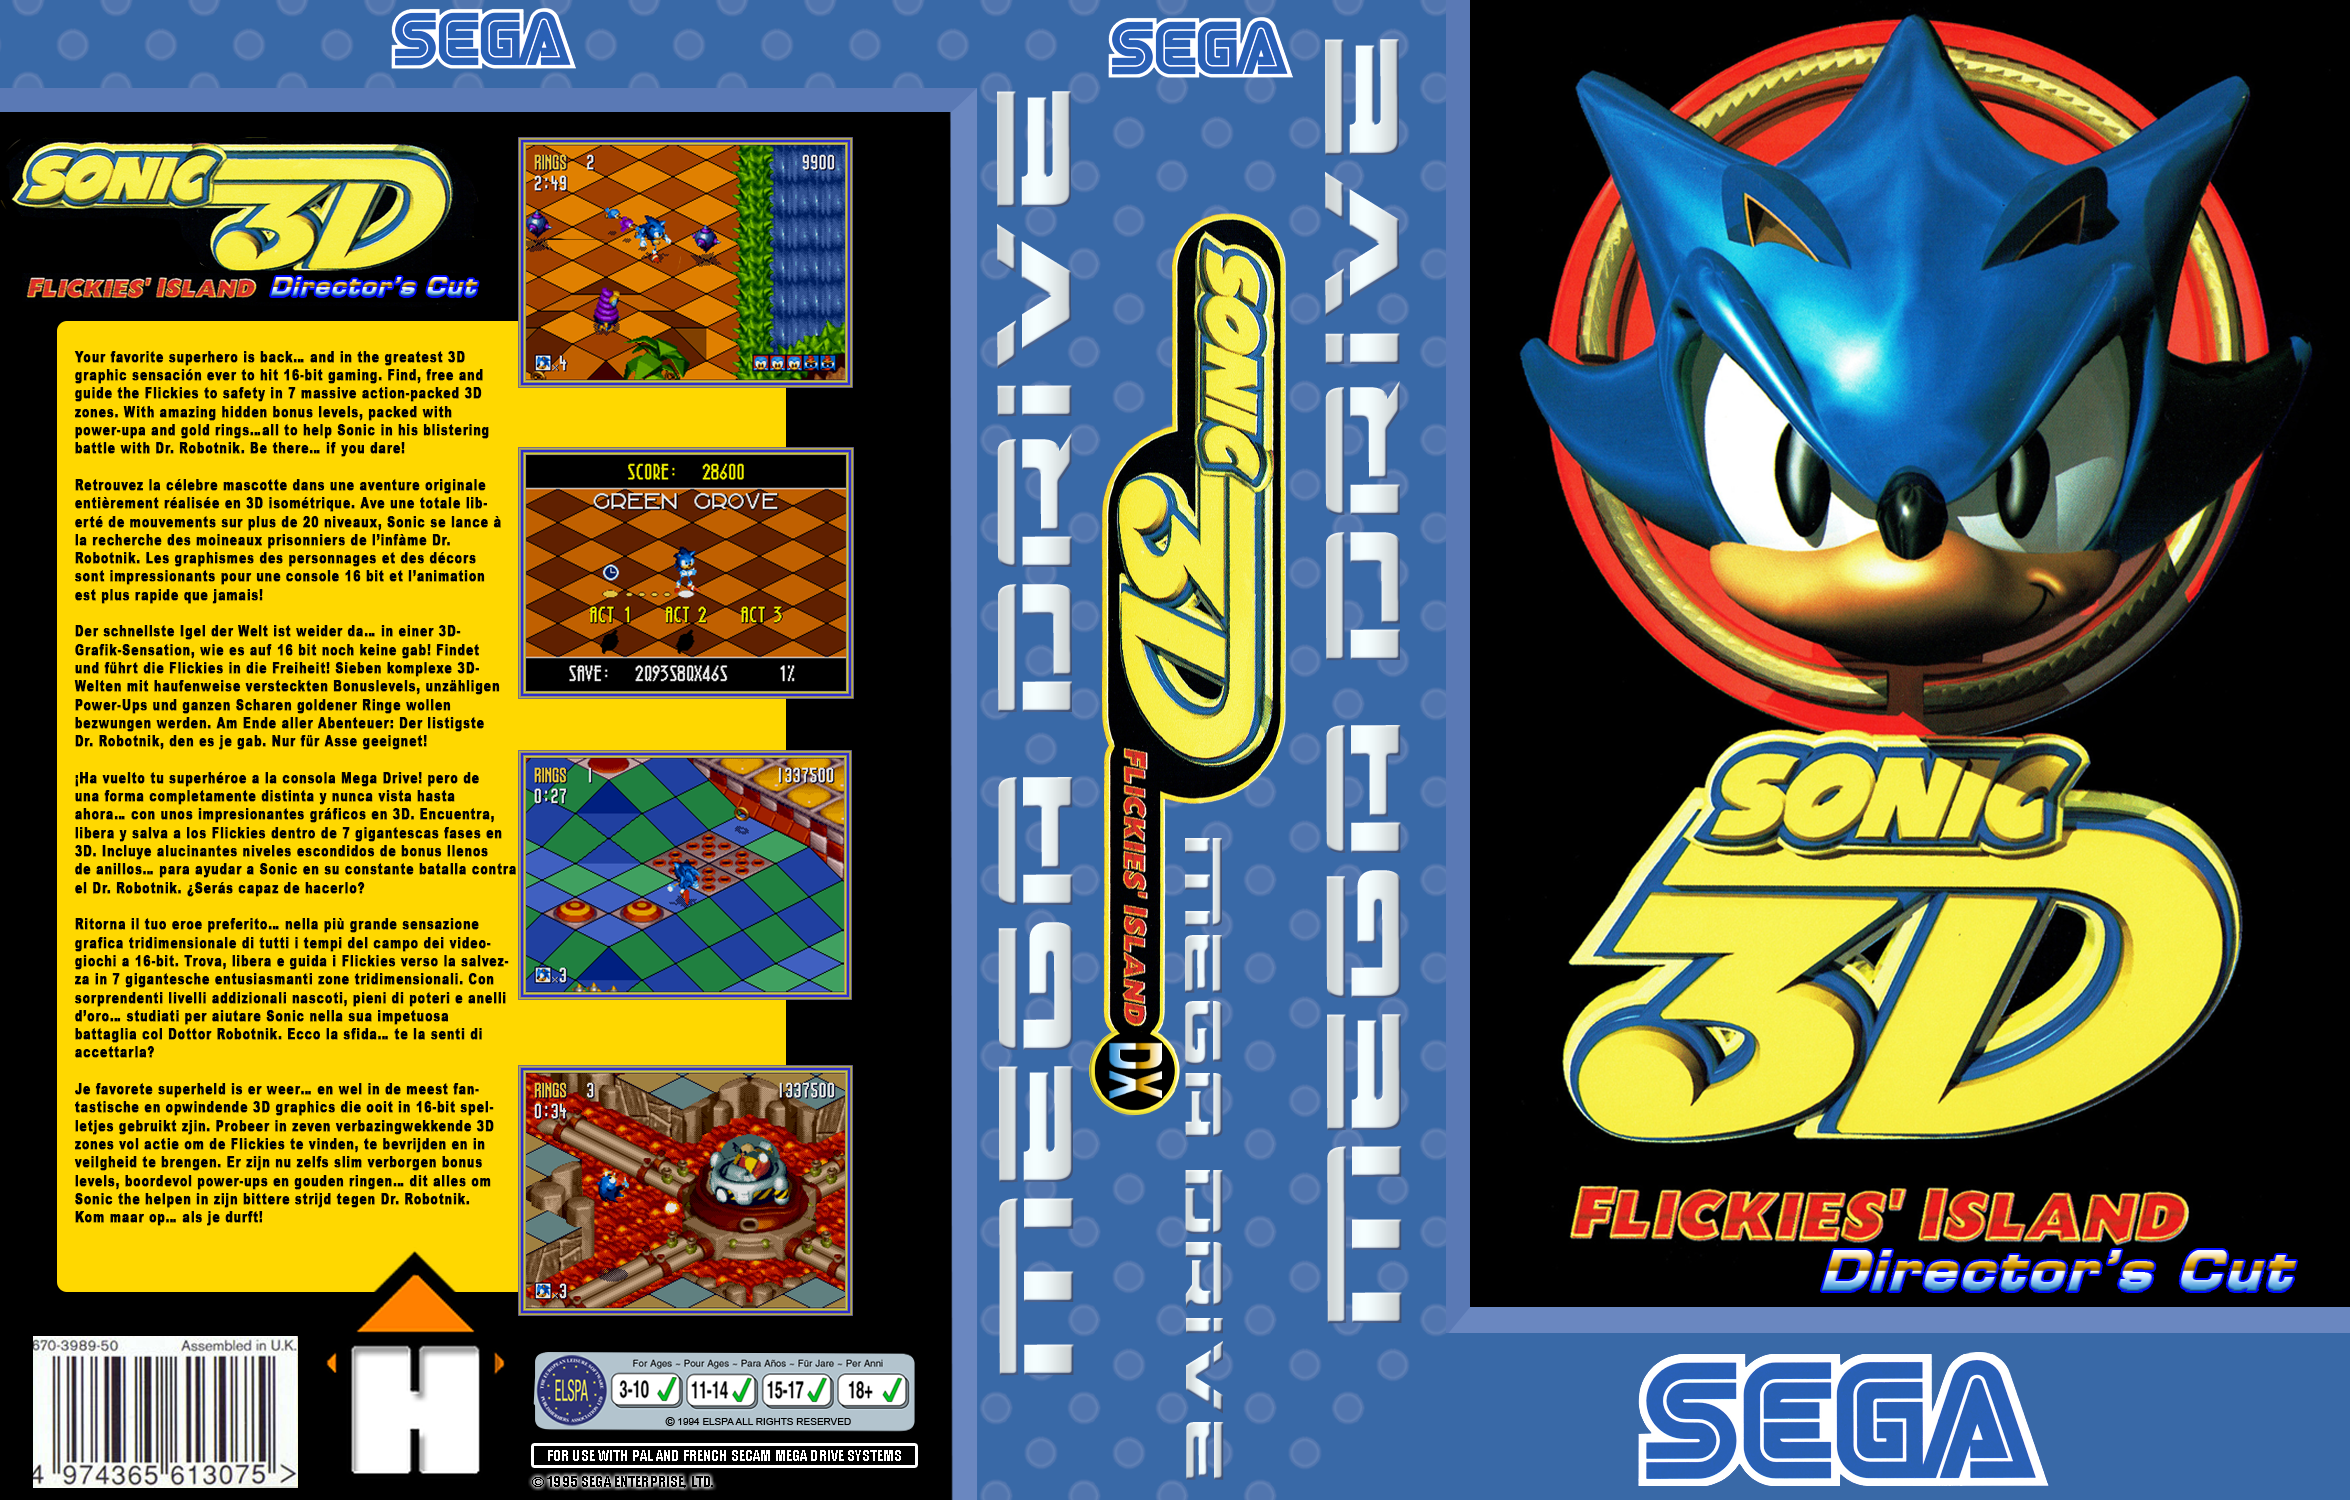 Sonic 3D Flickies' island Director's Cut EU box cover